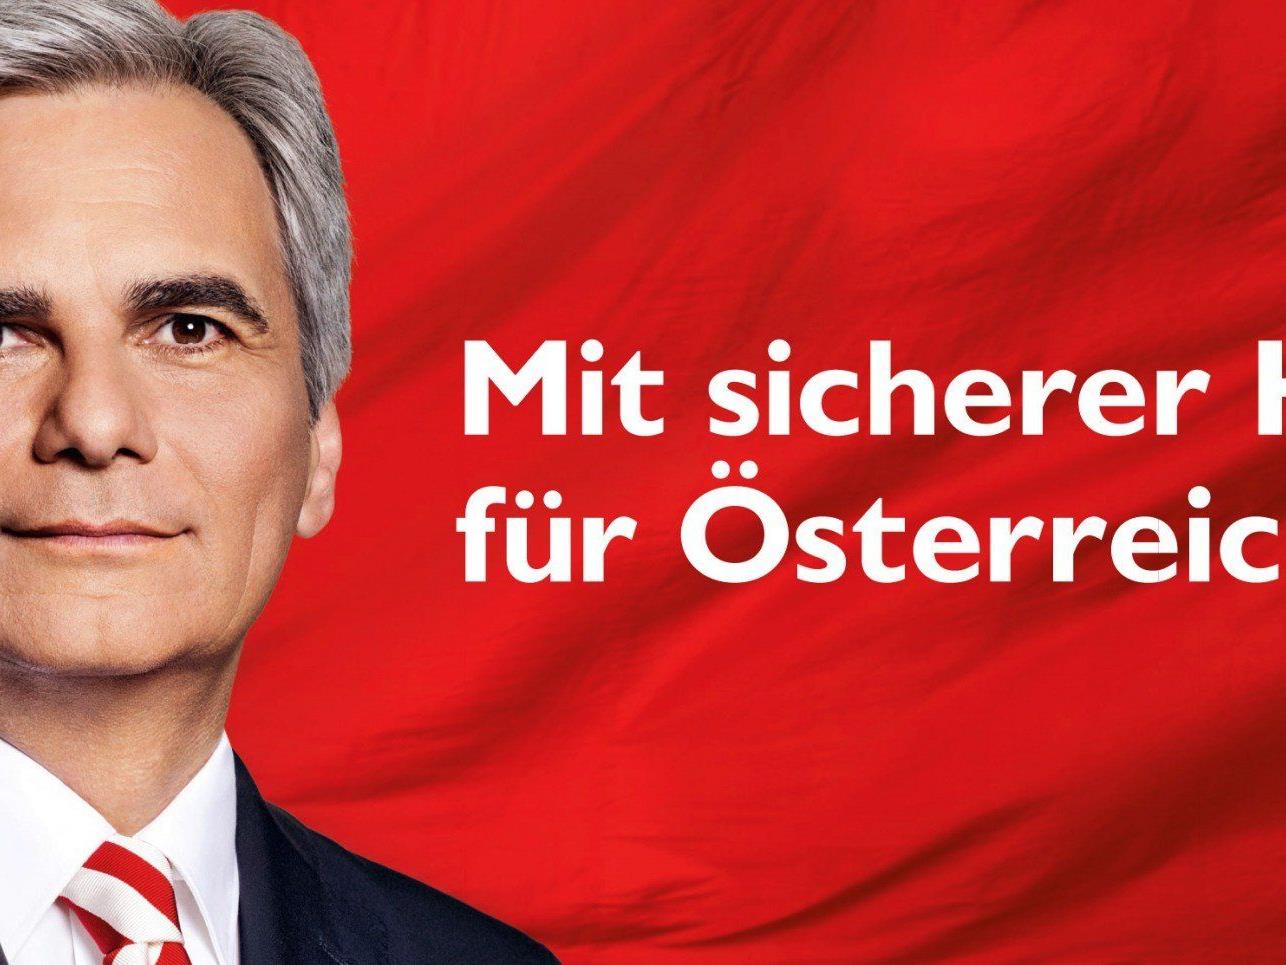 Debatte um Wahlplakatfinanzierung durch SP-Klub - Experten uneins, ÖVP empört